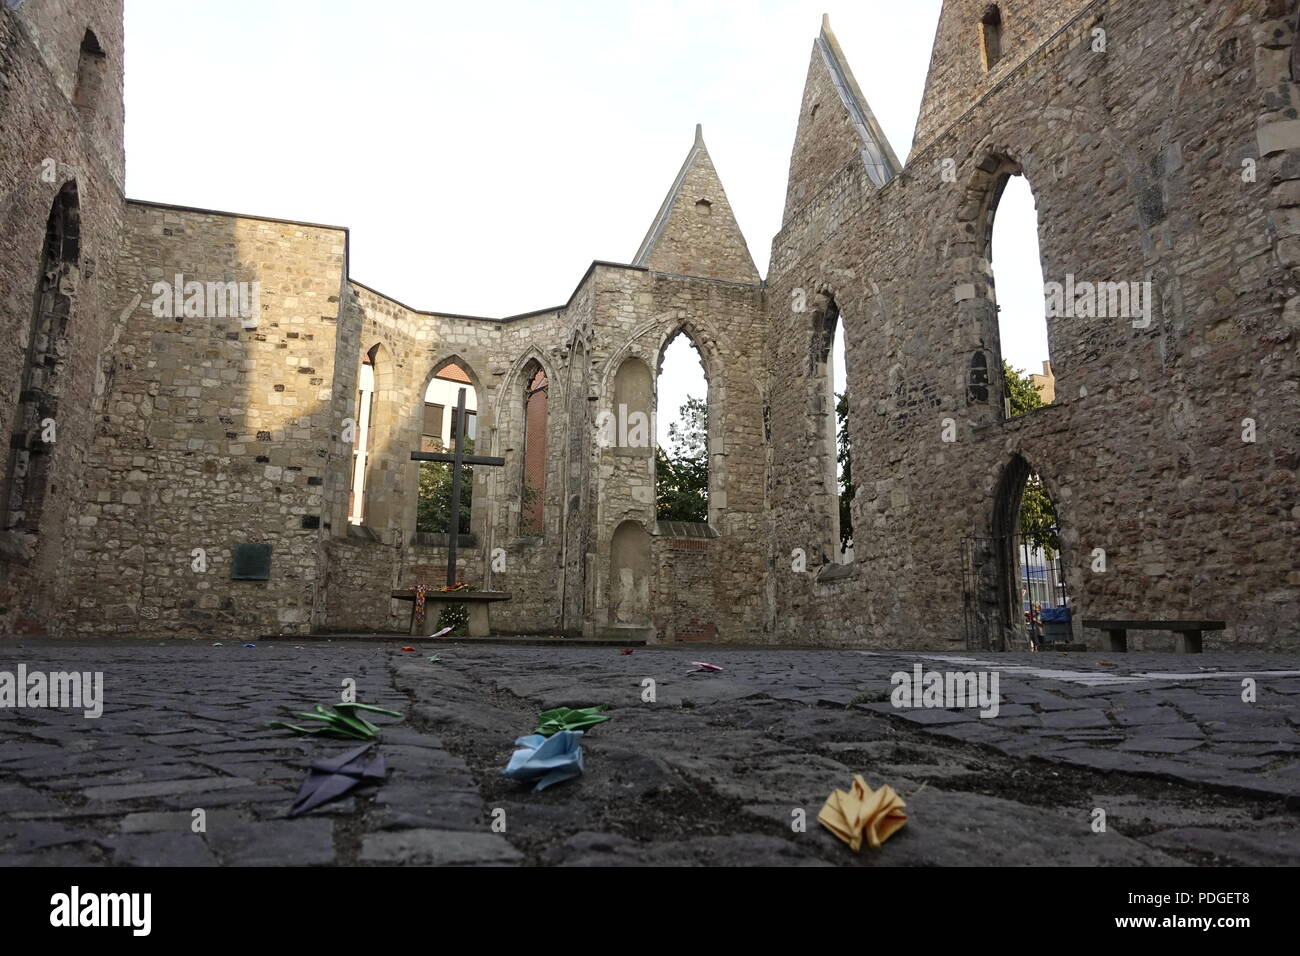 Gedenktag des Atombombenabwurfs auf Hiroshima in Ruine der Aegidienkirche Hannover. Stock Photo